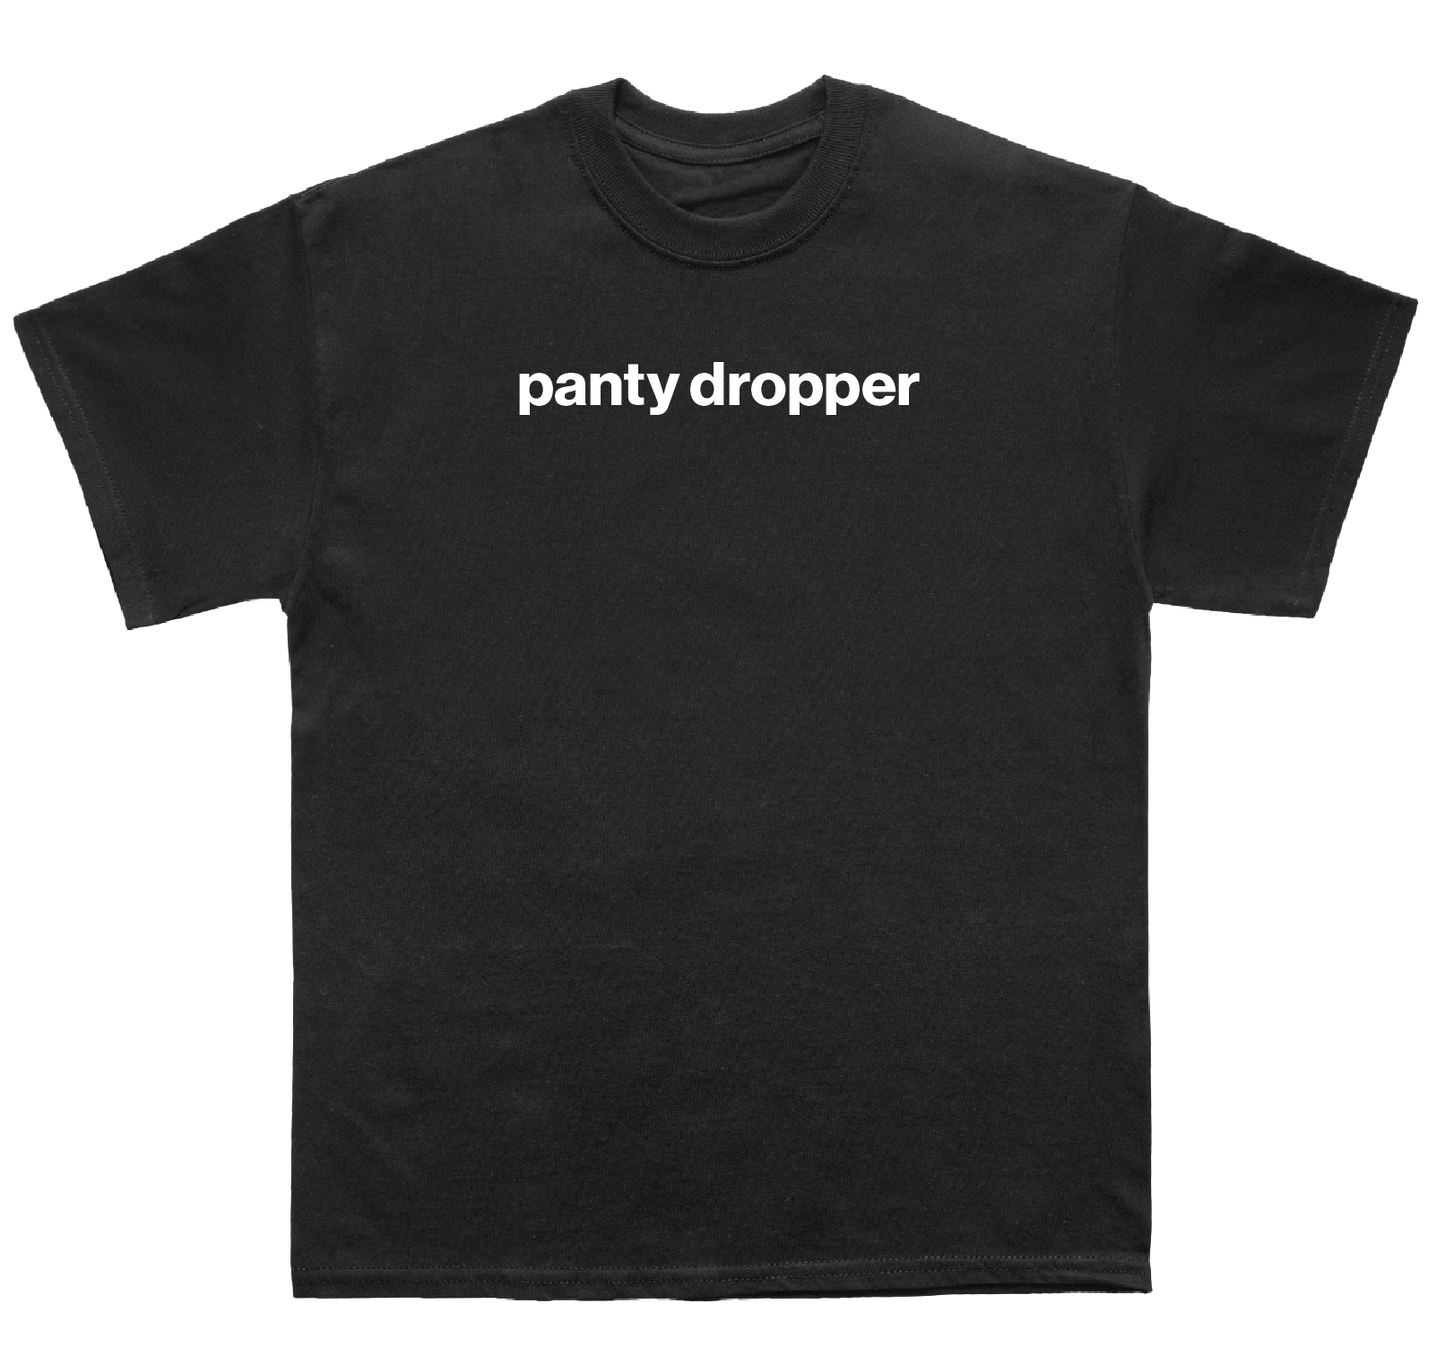 panty dropper shirt